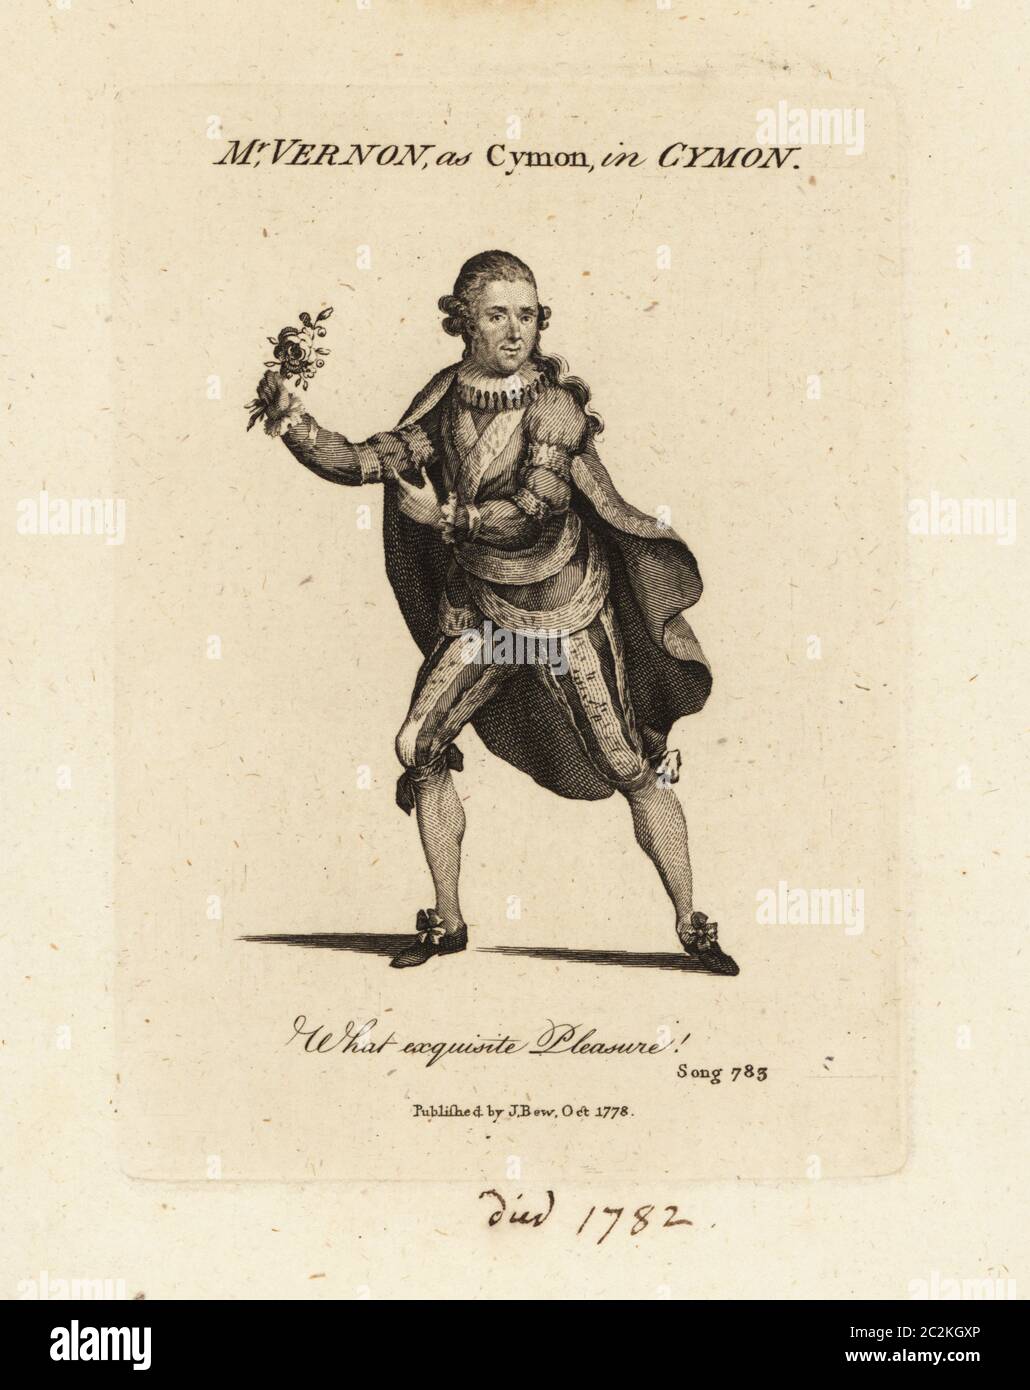 Mrs. Joseph Vernon als Cymon mit Thomas Arnes Kantate Cymon und Iphigenia. Er hält eine Rose und trägt einen Umhang, eine Rüsche, eine Doppelte und eine Hose. Vernon (1731-1782), Schauspieler und Sänger, der in Queen Mab und der Bettler's Opera auftrat. Kupferstich aus dem 'Vocal Magazine', herausgegeben von J. BEW, 1778. Stockfoto